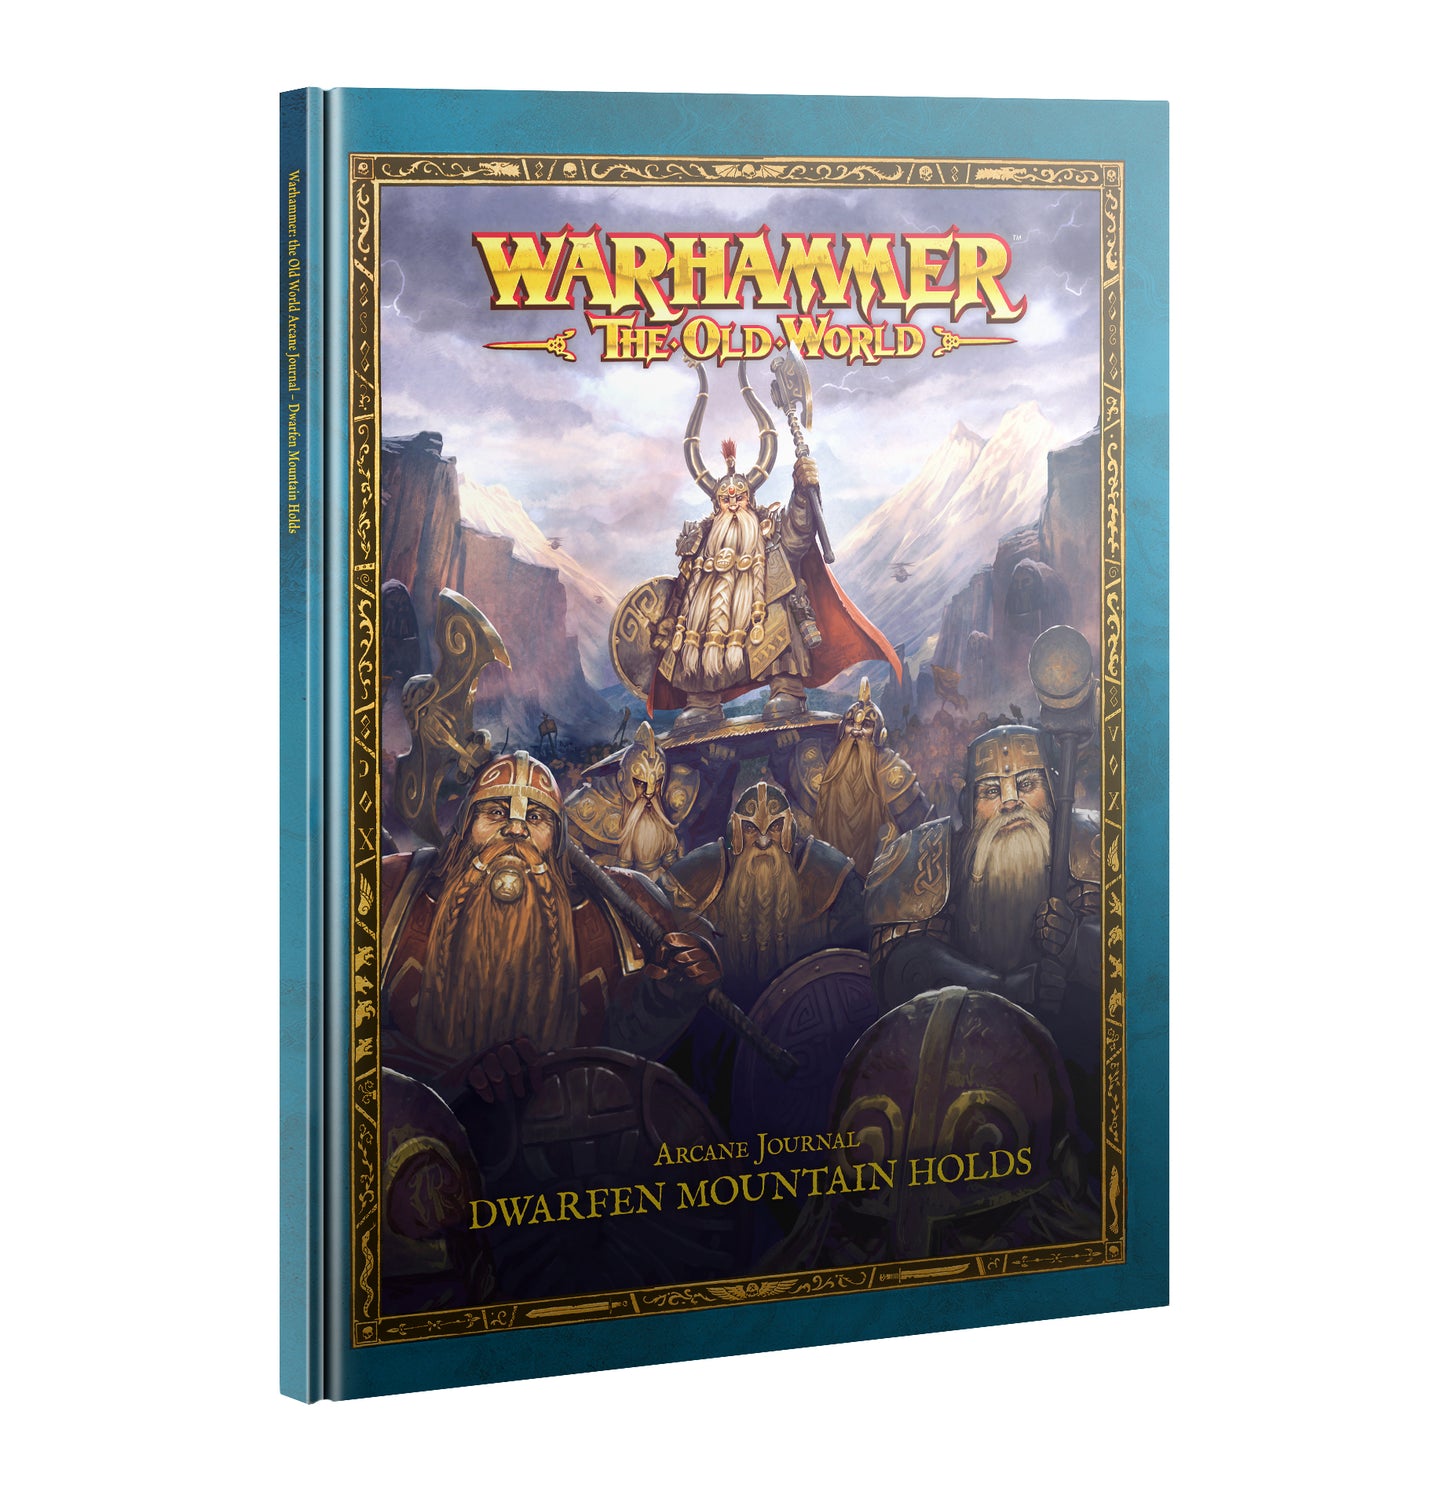 Arcane Journal Dwarfen Mountain Holds Warhammer Old World PREORDER 8/3 WBGames